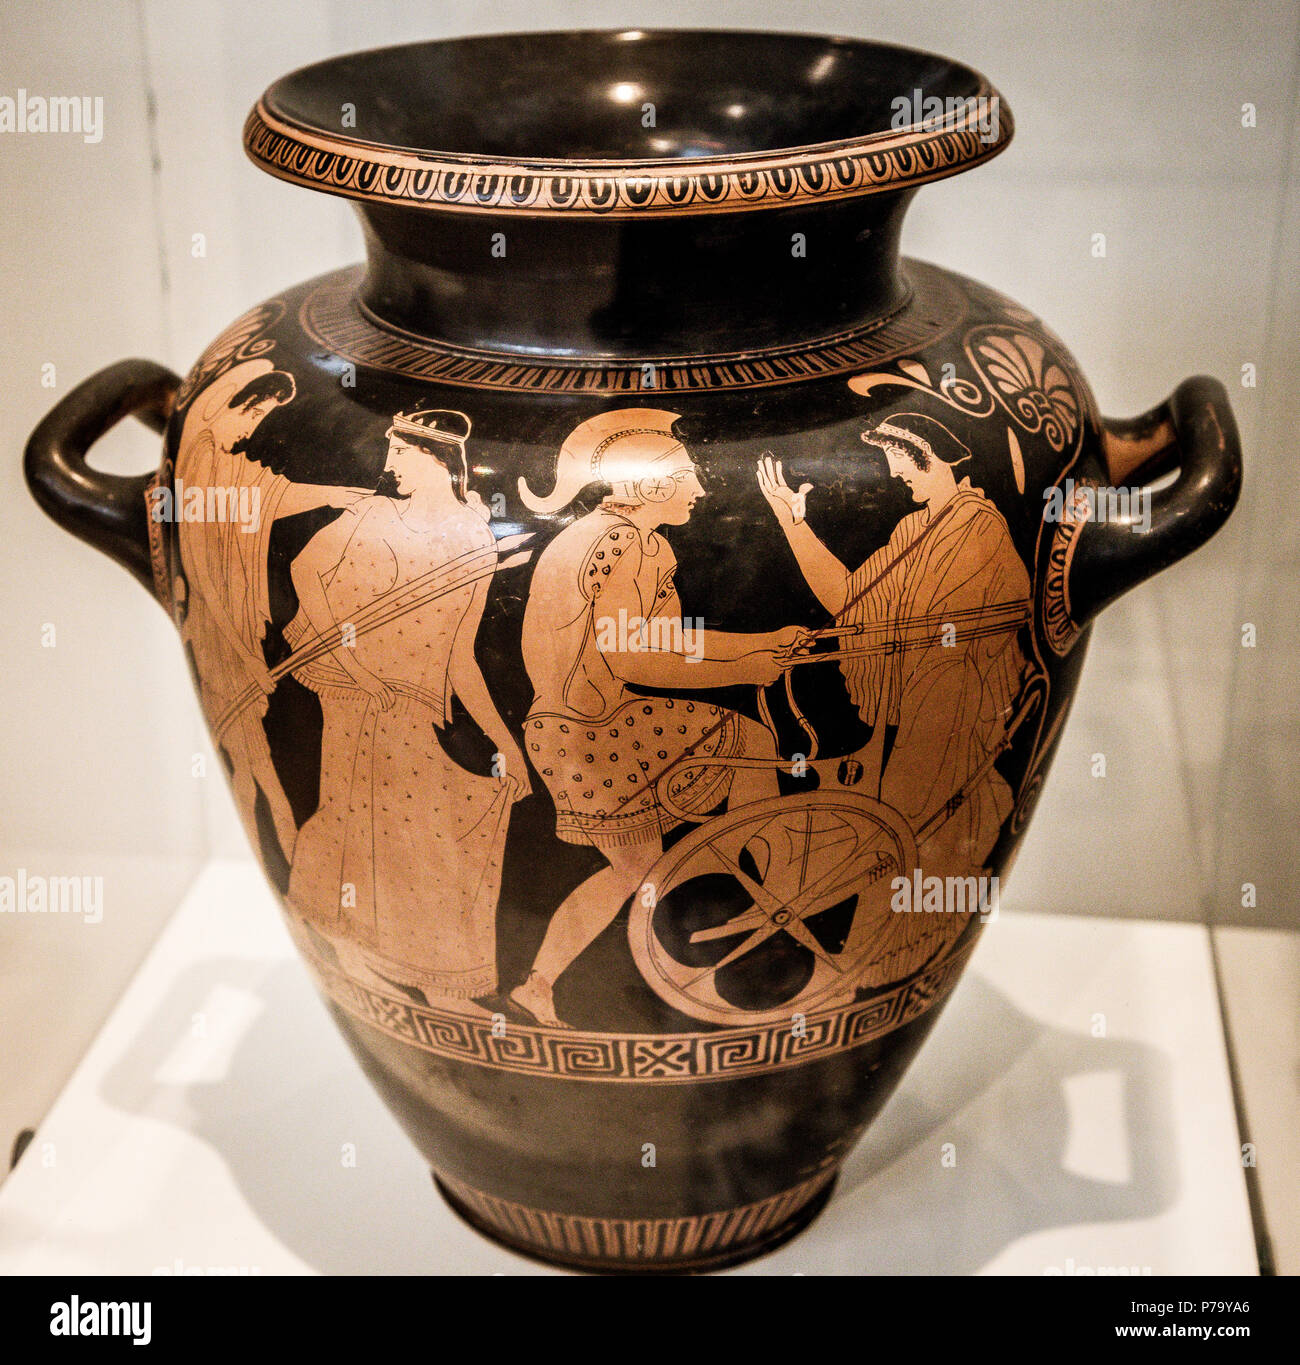 Rot-gemustert Stamnos (Vase), Dachboden Rot, gefunden, Marathon, Attika, grabkunst Urne, erste Helen's Entführung von Theseus. Artist Polygnotos, 430-420 BC. Stockfoto